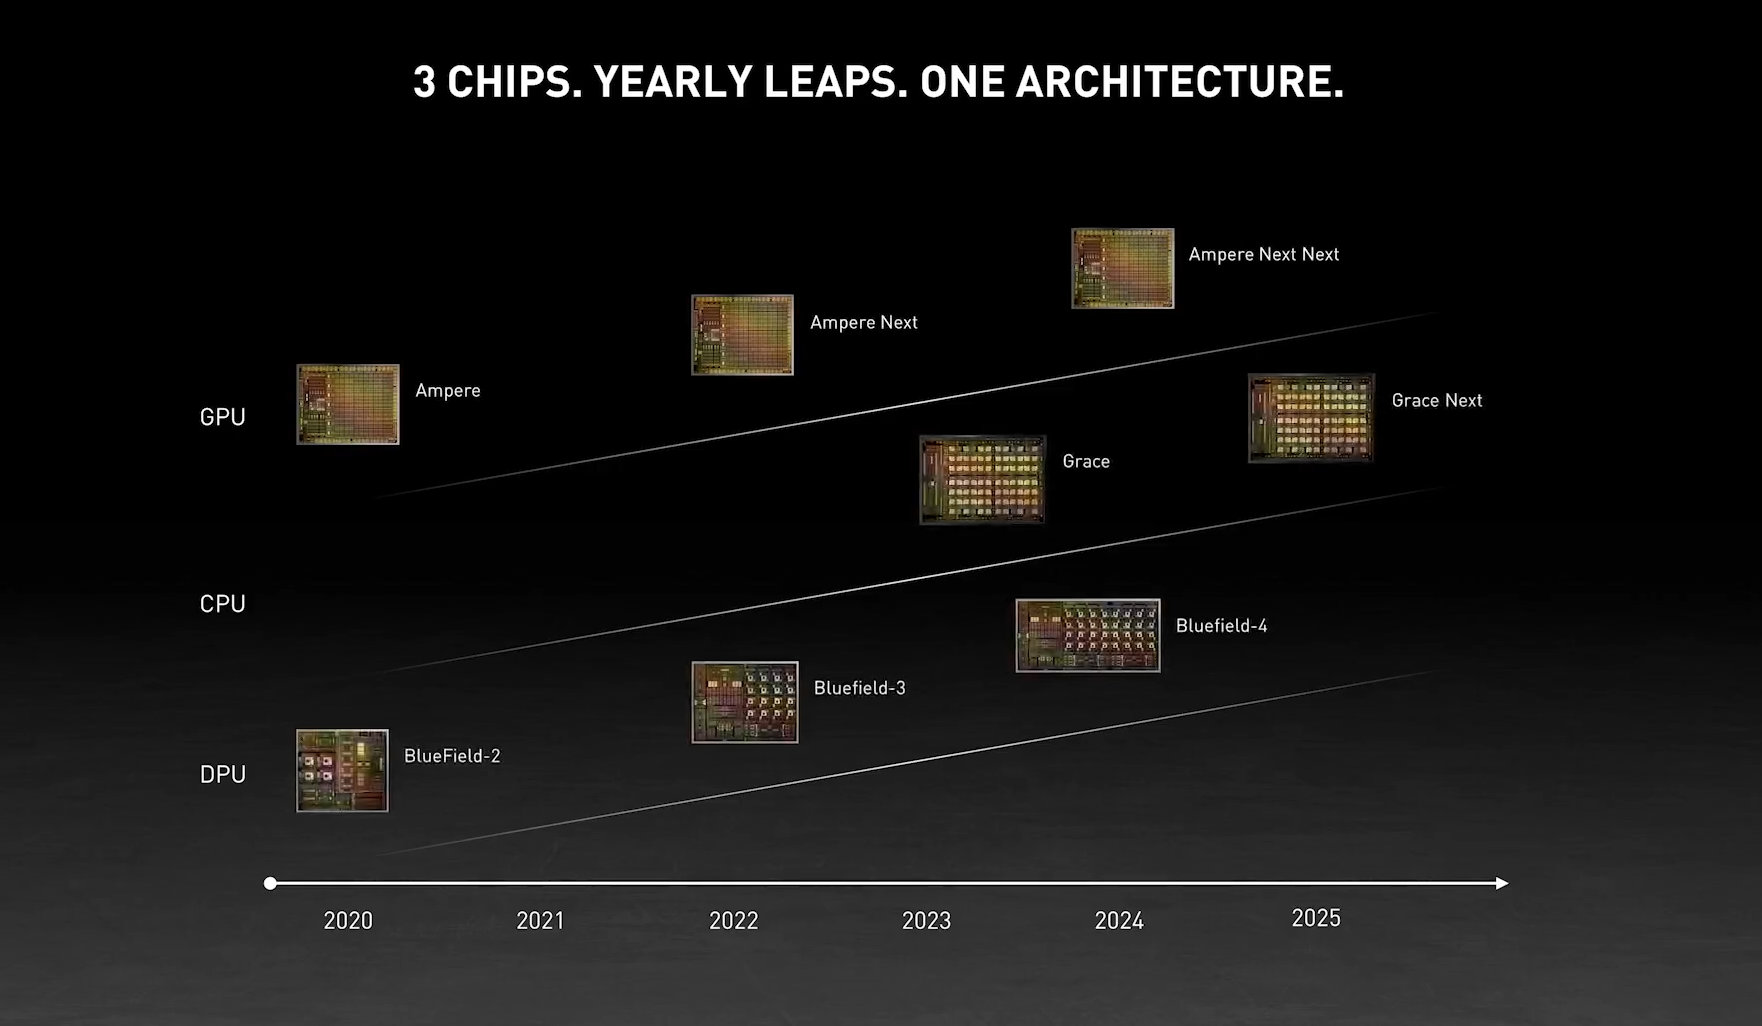 NVIDIA releases its CPU, GPU and DPU datacenter 20202025 roadmap